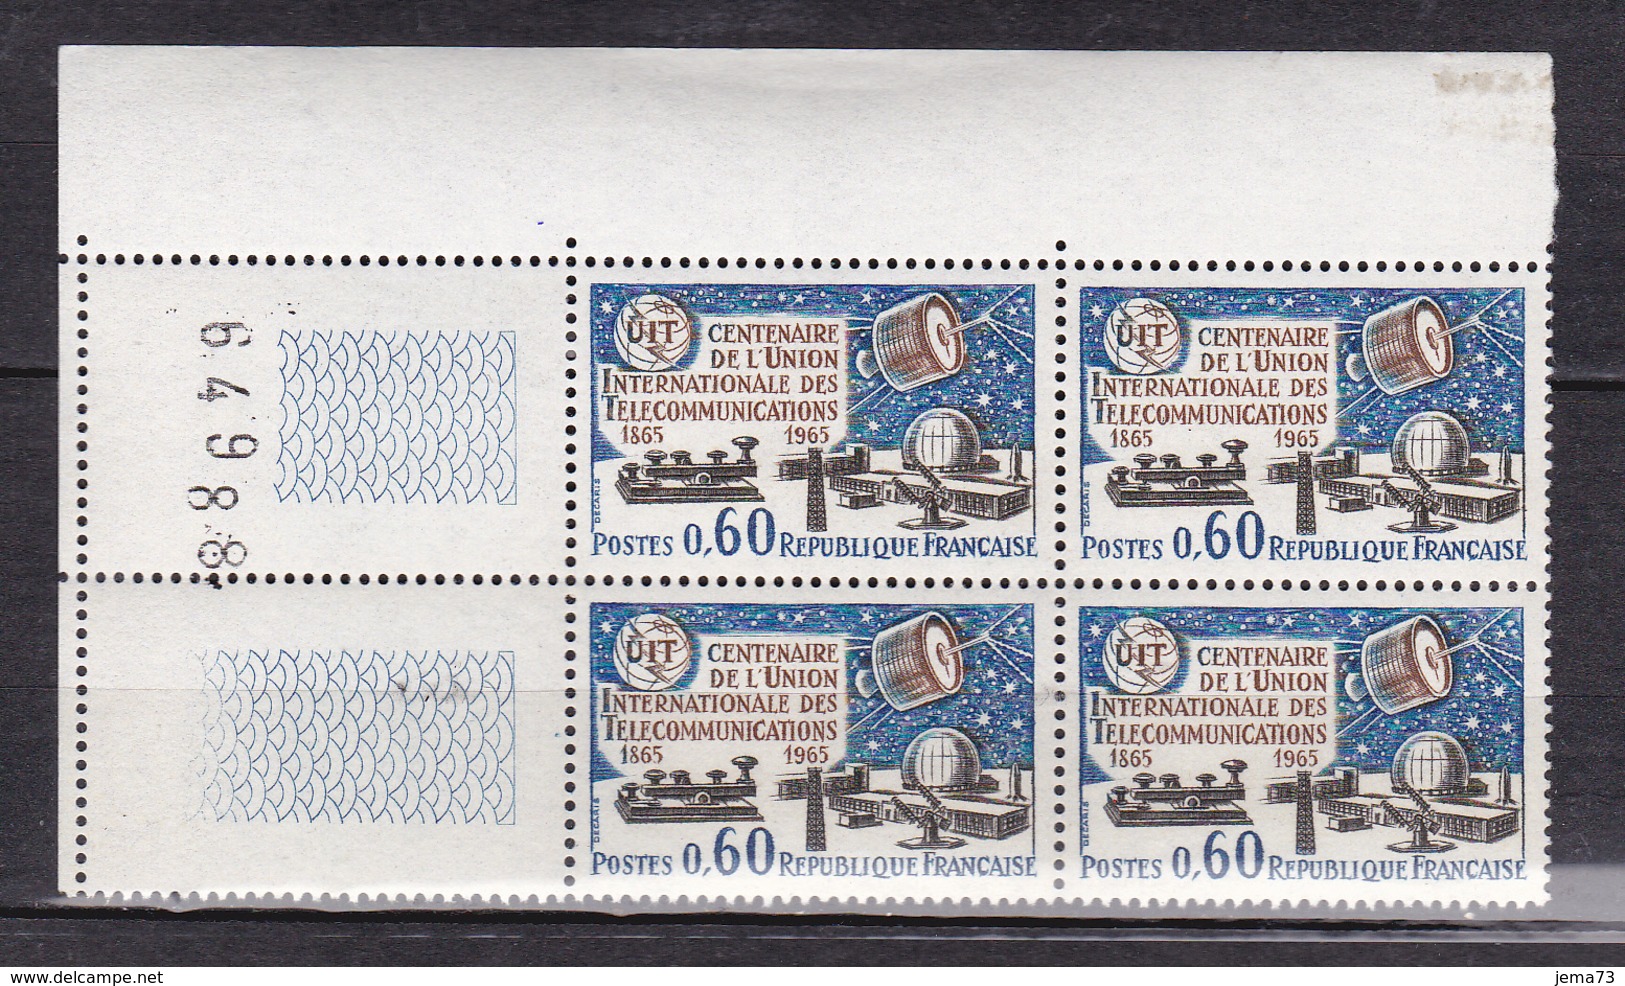 N° 1451 Centenaire De L'Union Internationnale Des Télécommunications:Un Blocs De 4 Timbres Neuf Impeccable: - Unused Stamps